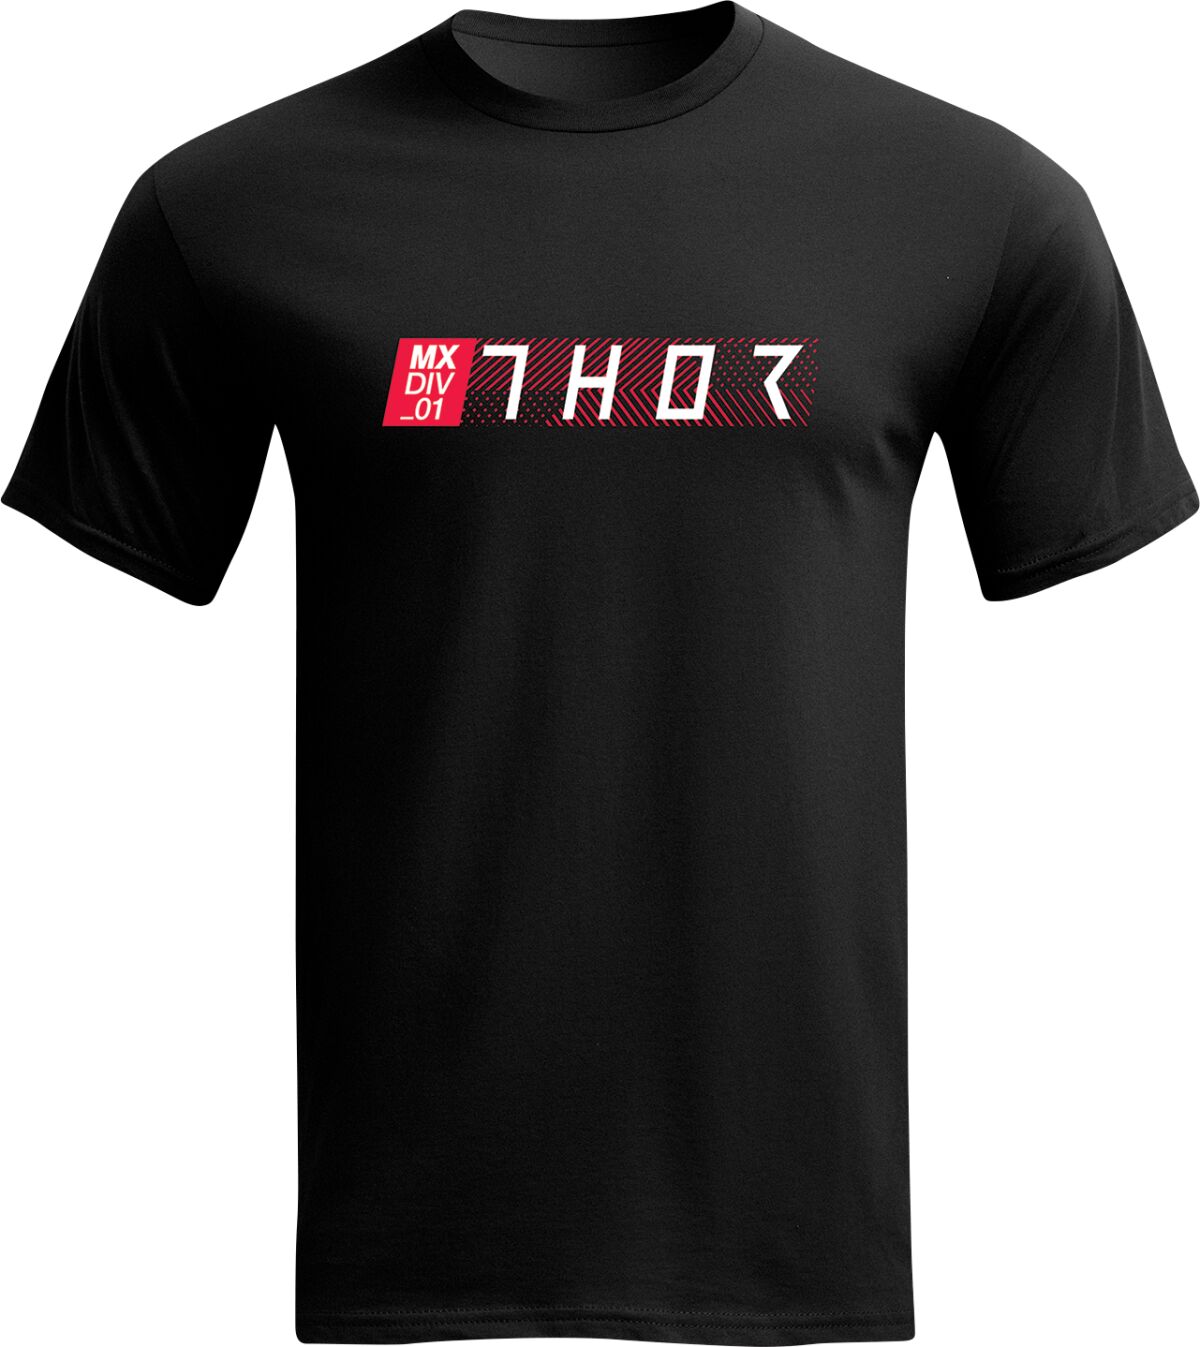 Tech T-Shirt